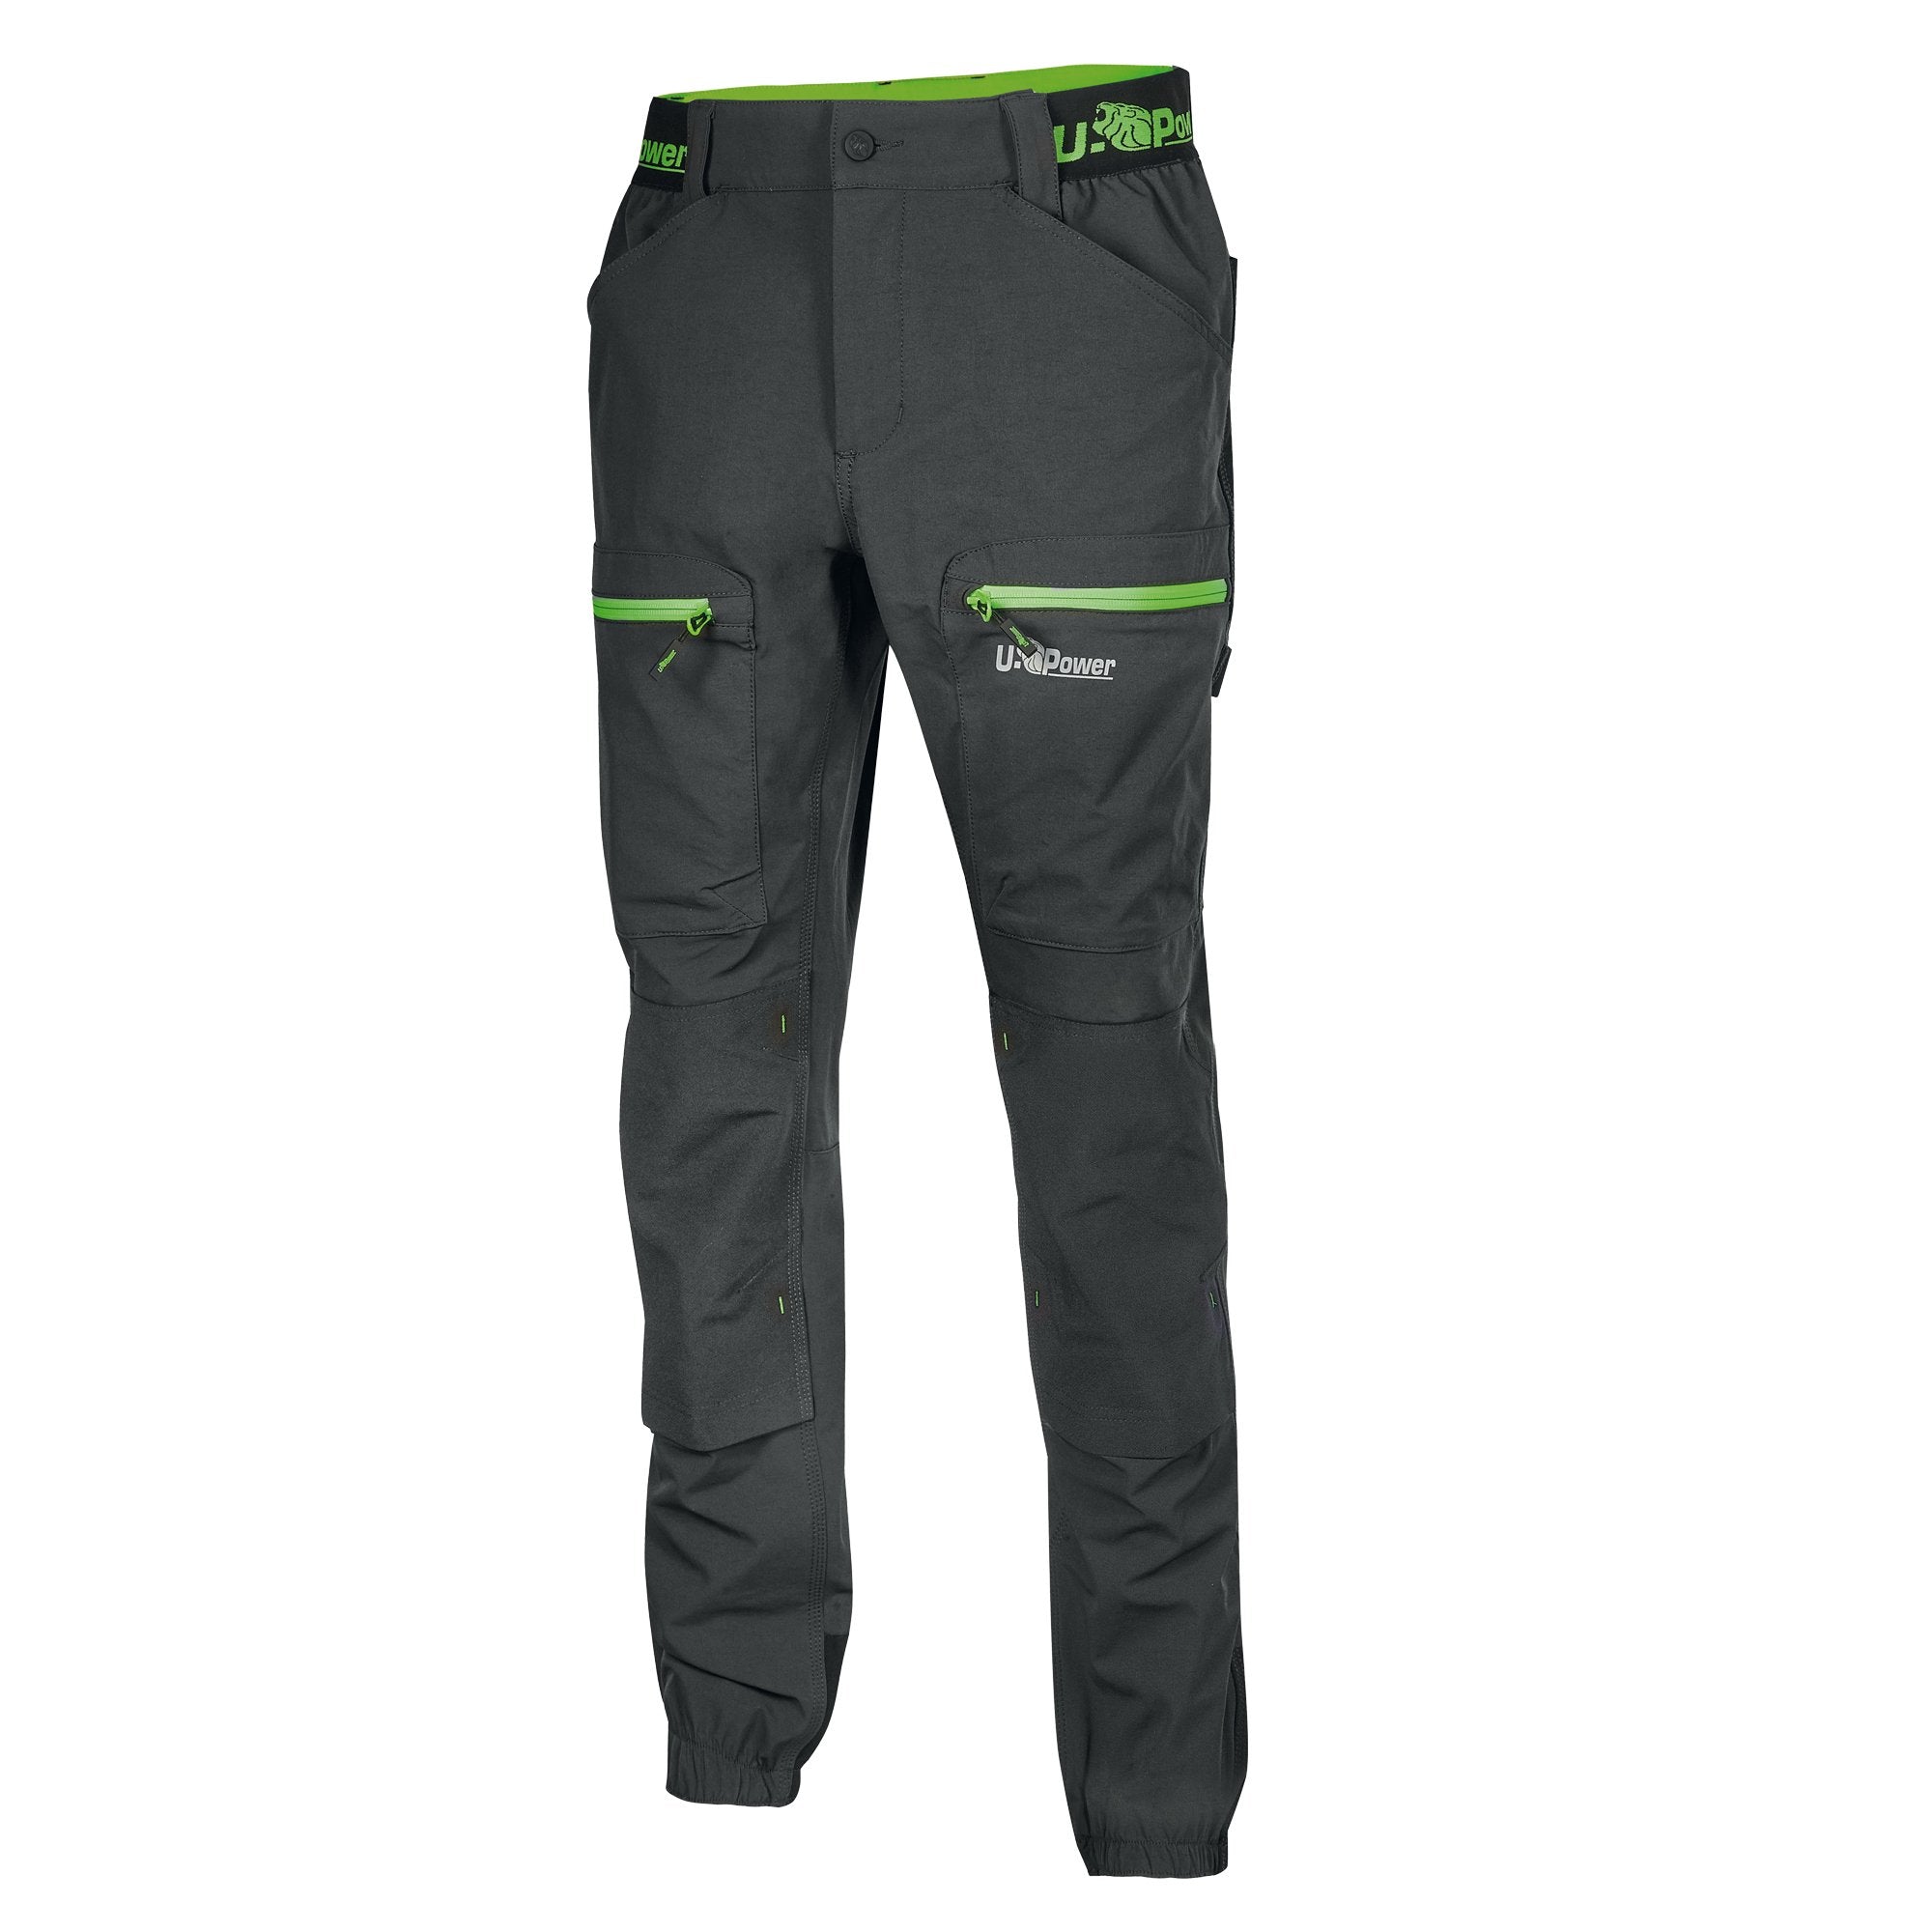 u-power-pantaloni-lavoro-harmony-taglia-m-grigio-verde